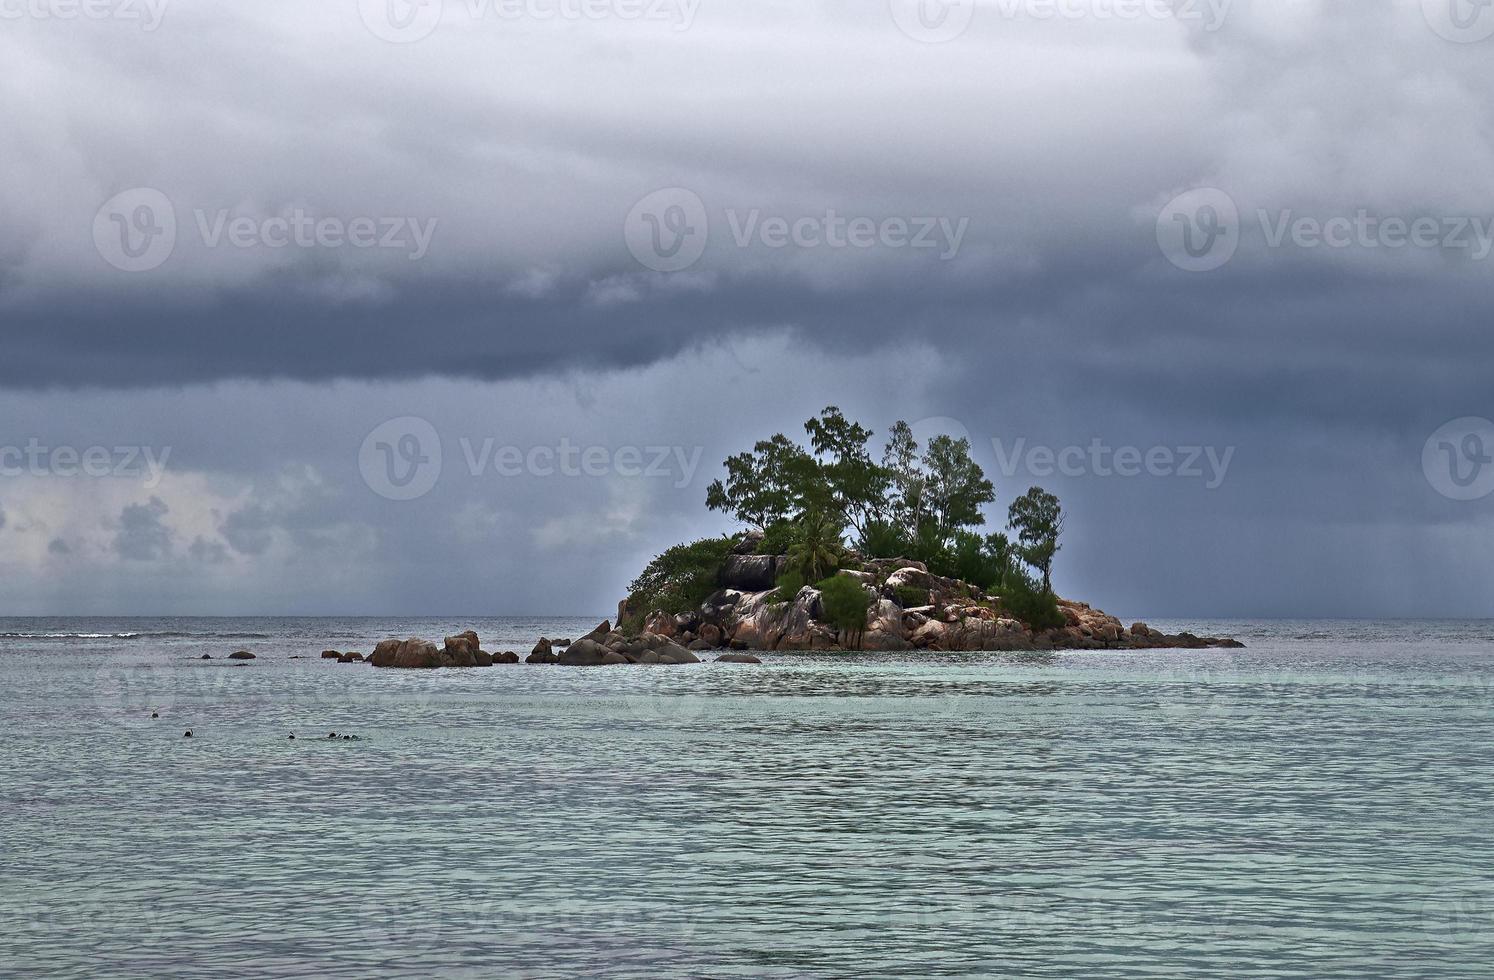 hermosas impresiones del paisaje tropical en el paraíso de las islas seychelles foto